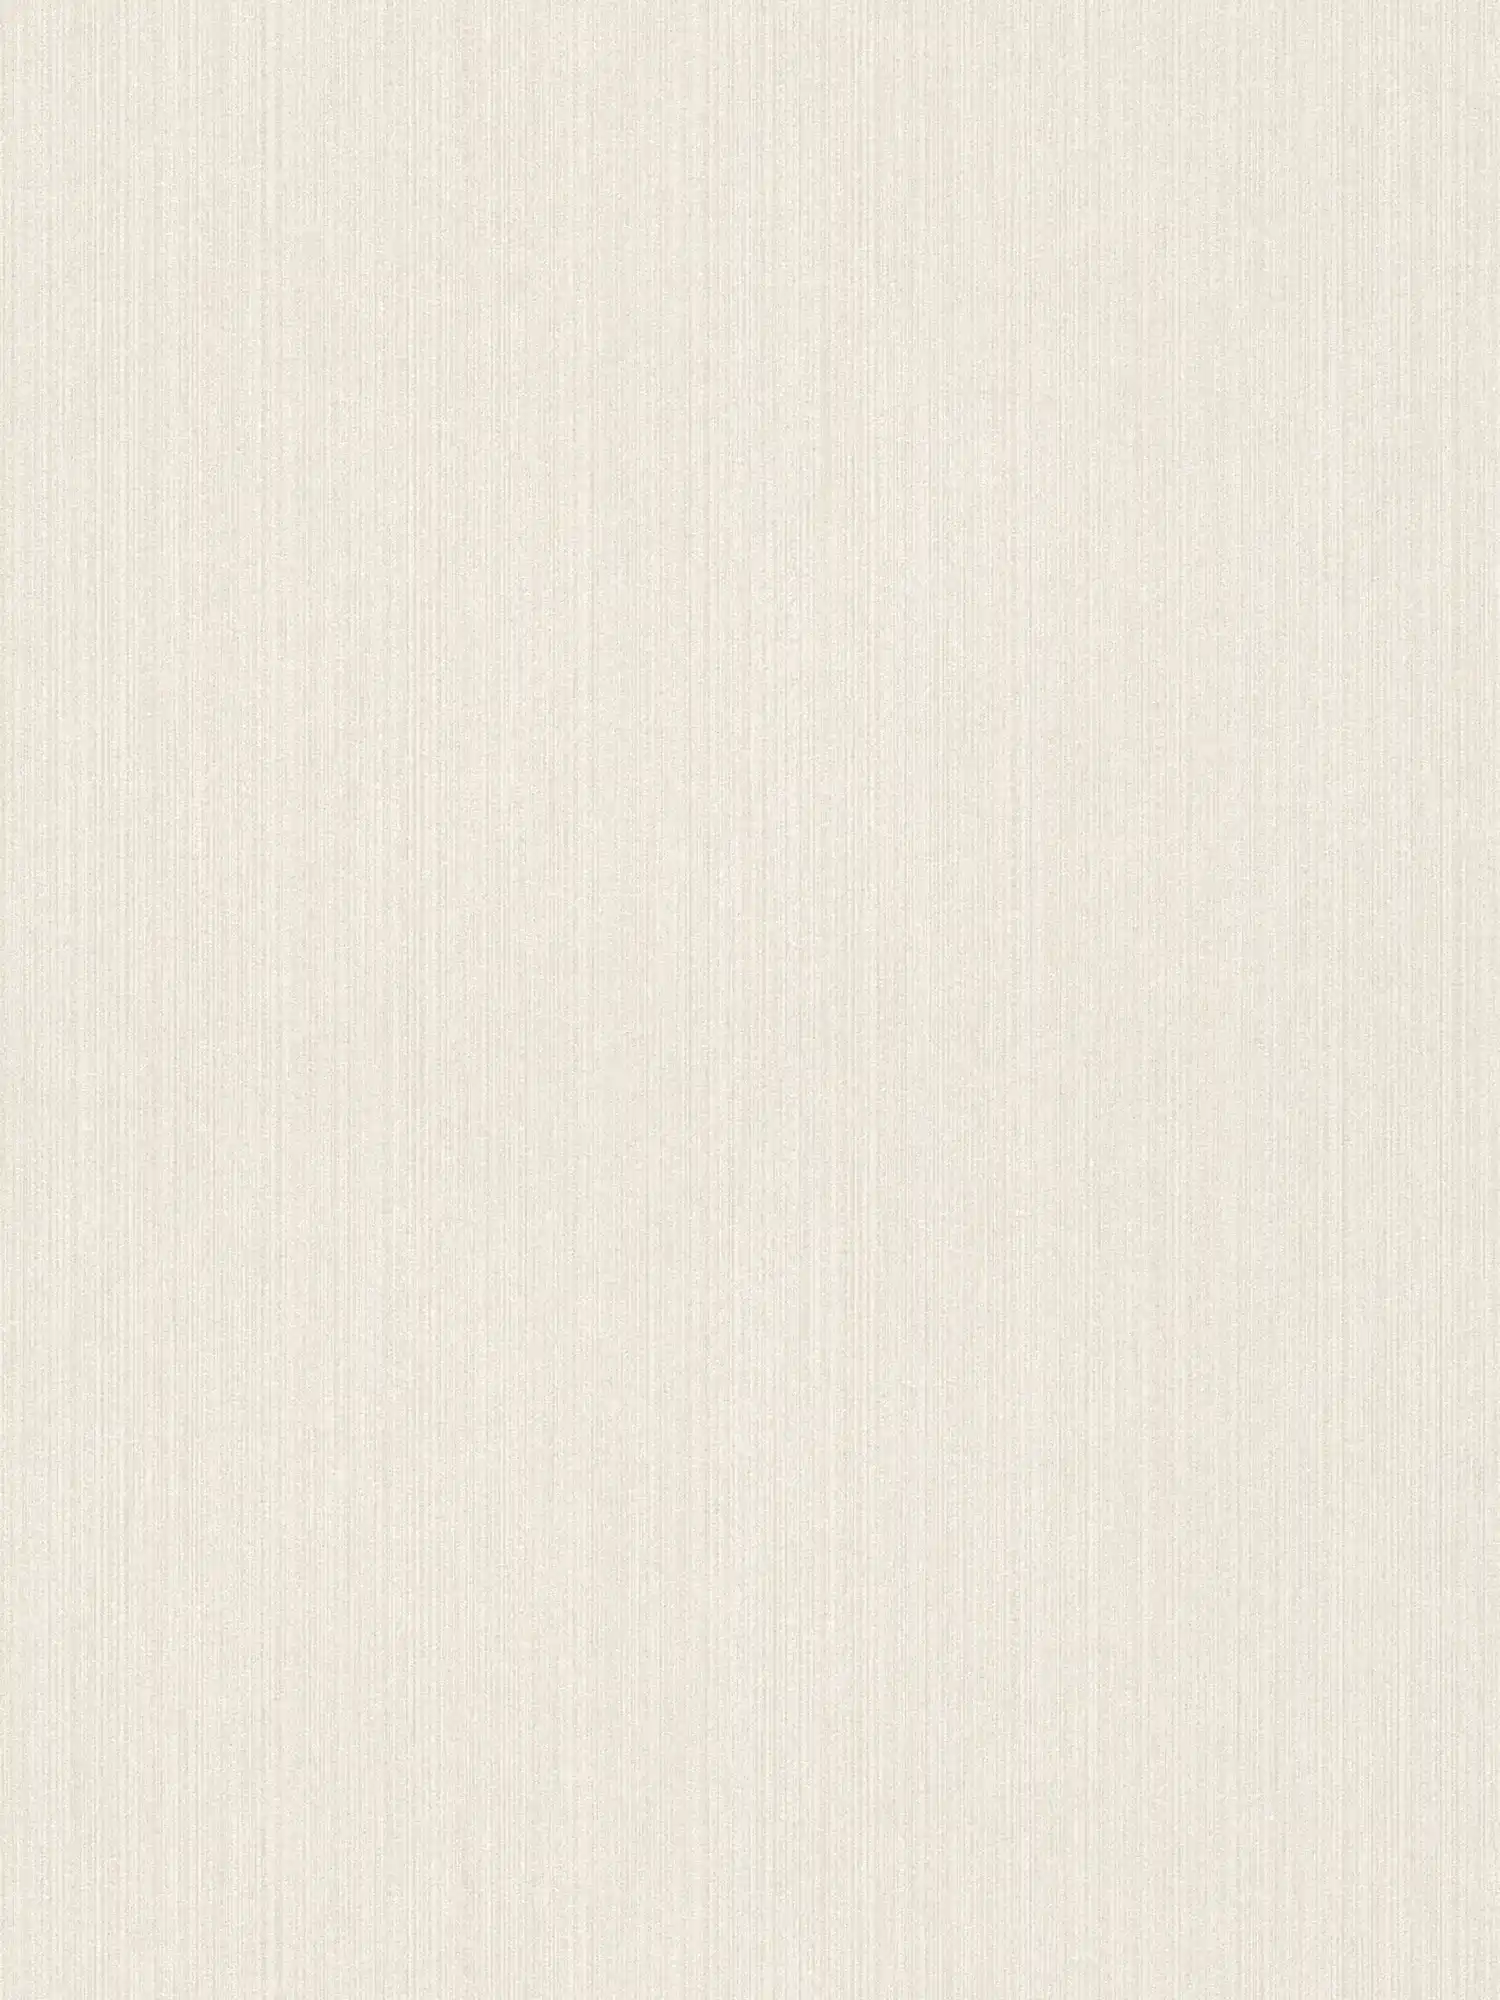         Papier peint scintillant avec motif ligné & aspect soie sauvage - blanc
    